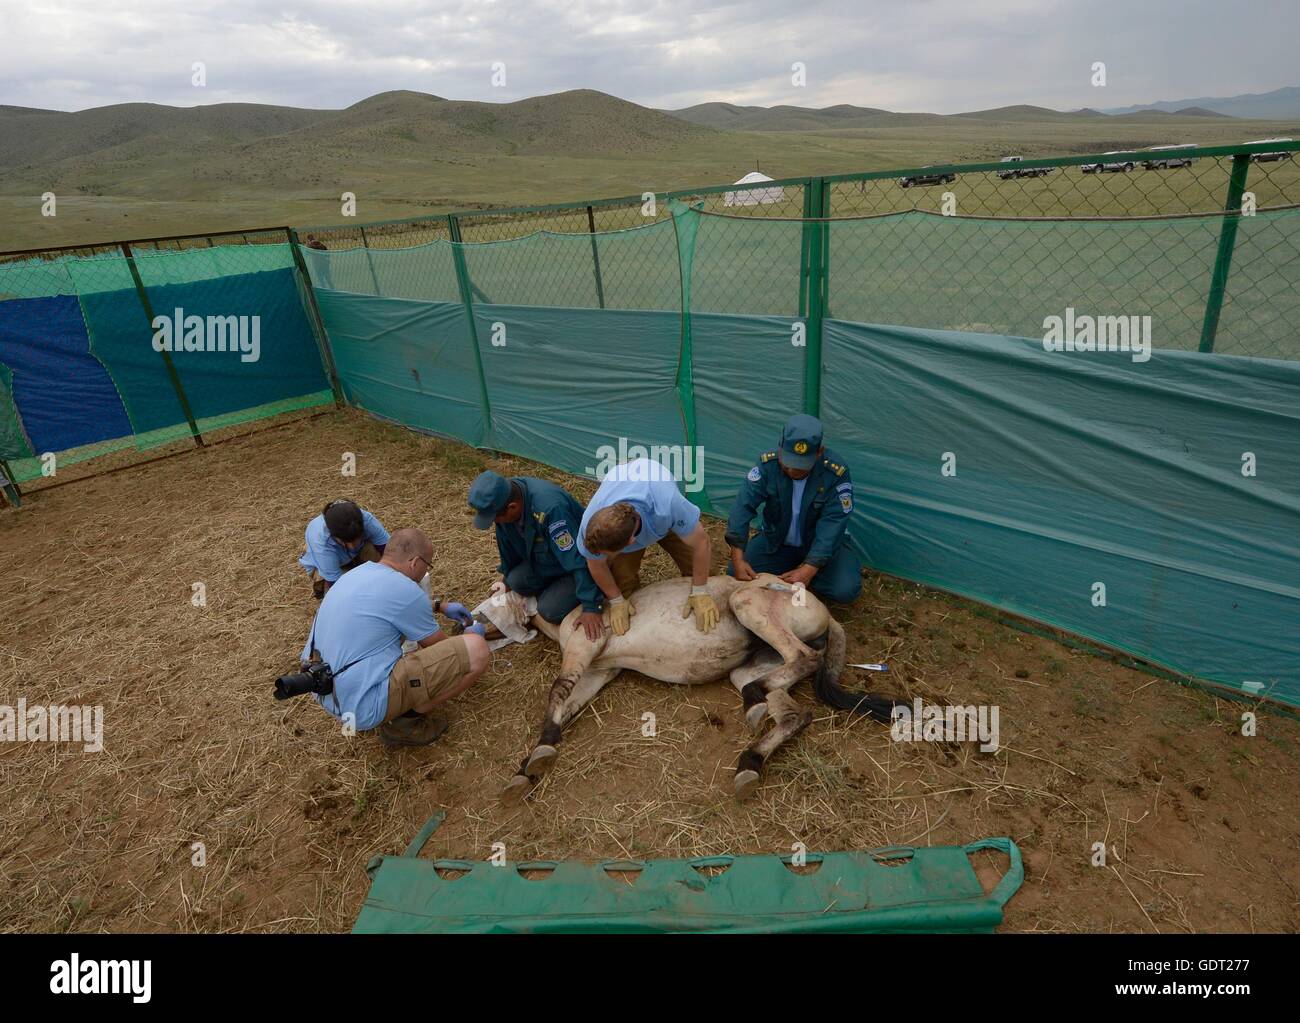 Khustain Nuruu, Mongolei. 21. Juli 2016. Przewalski´s Pferde aus dem mongolischen Nationalpark Khustain Nuruu in der Mongolei sind bereit für den Transport nach Takhin Tal, wo bereits eine Gruppe von vier Stuten aus der Prager Zoo, am 21. Juli 2016 ist. © Michal Kru Stockfoto